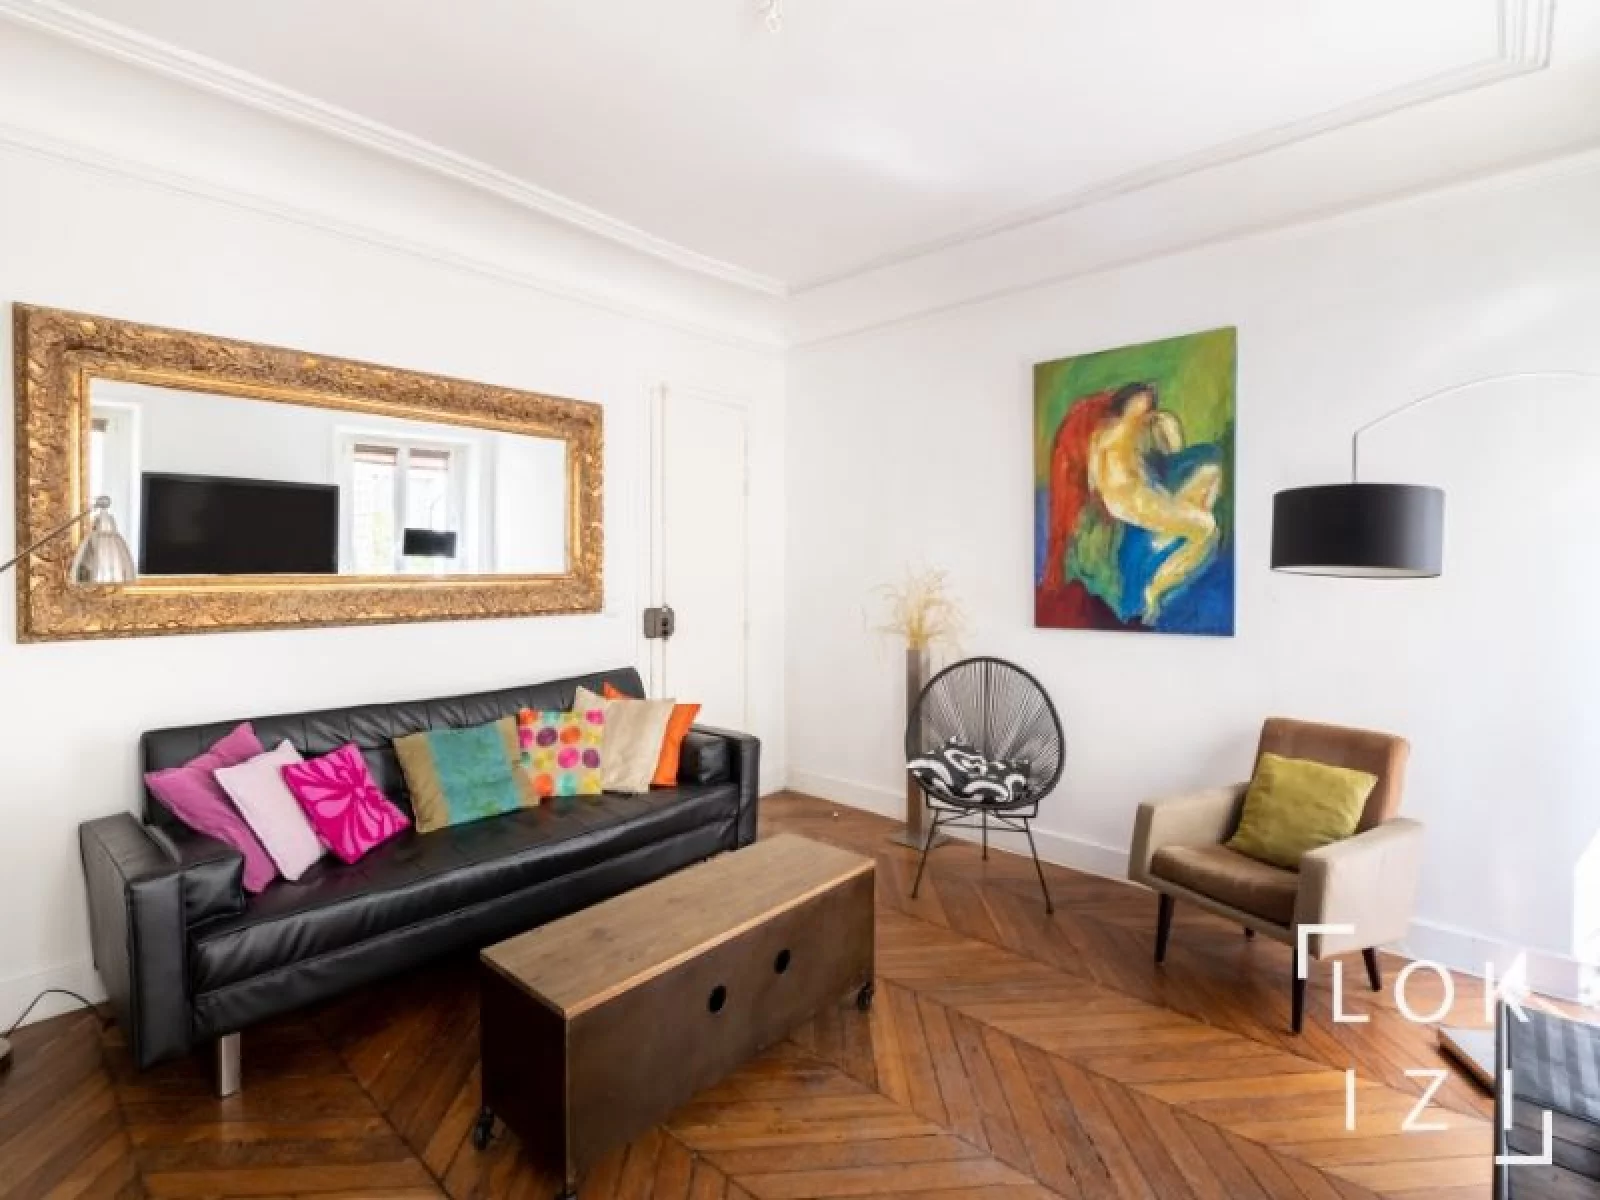 Location appartement meublé 2 pièces 45m² (Paris 10)